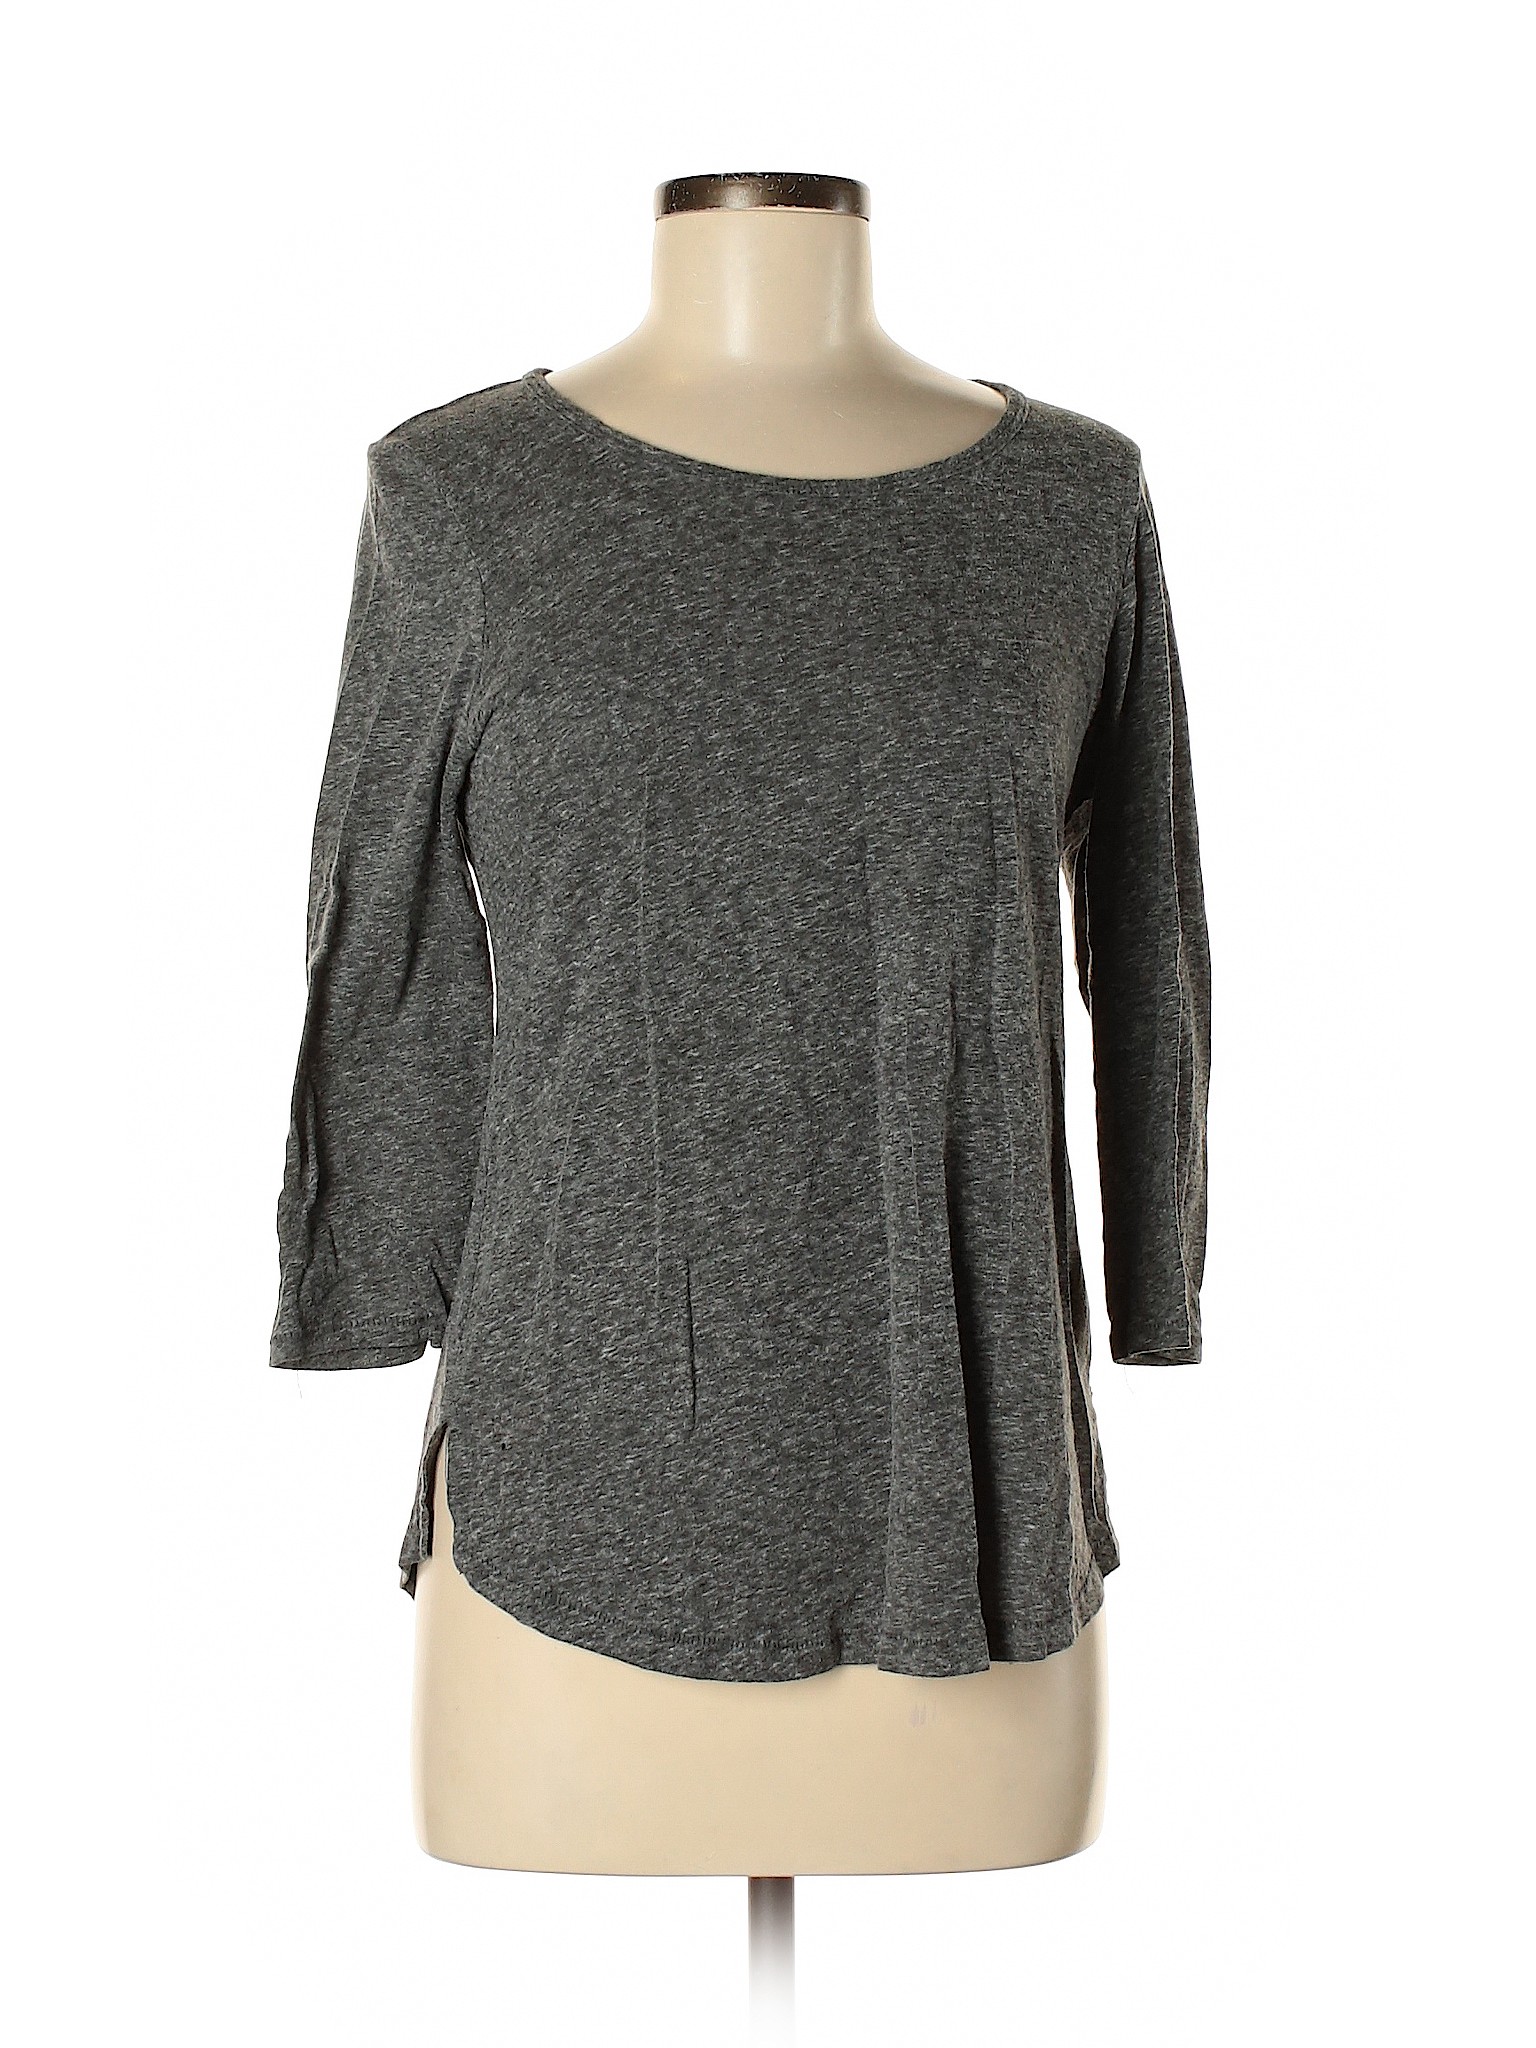 Artisan NY Women Gray 3/4 Sleeve T-Shirt M | eBay